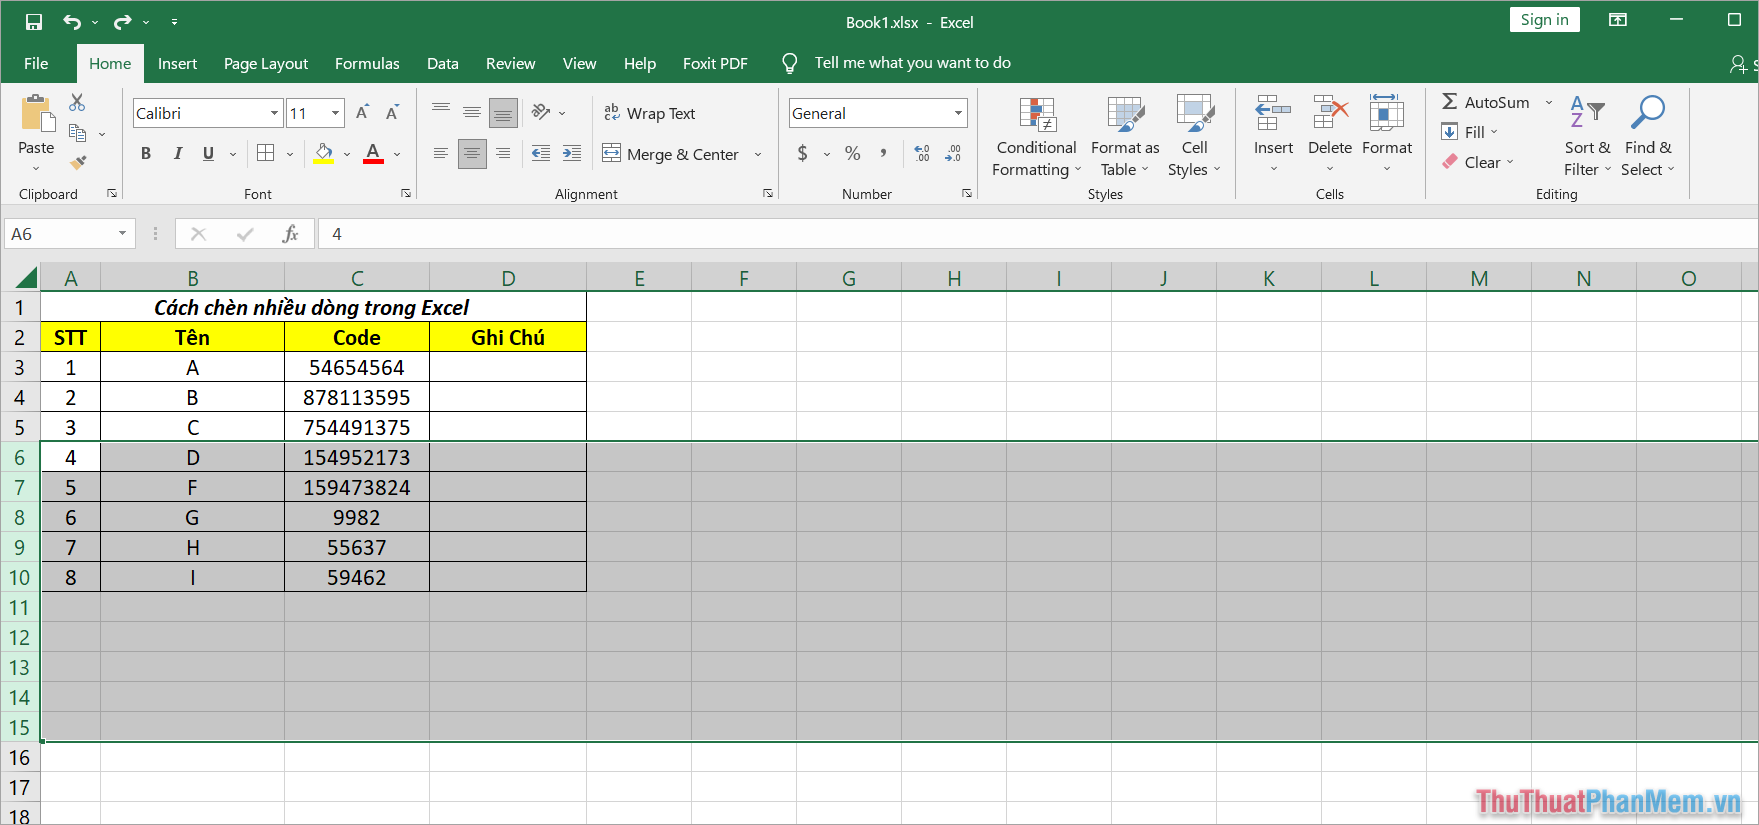 Cách Insert nhiều dòng trong Excel bằng Insert Sheet Rows